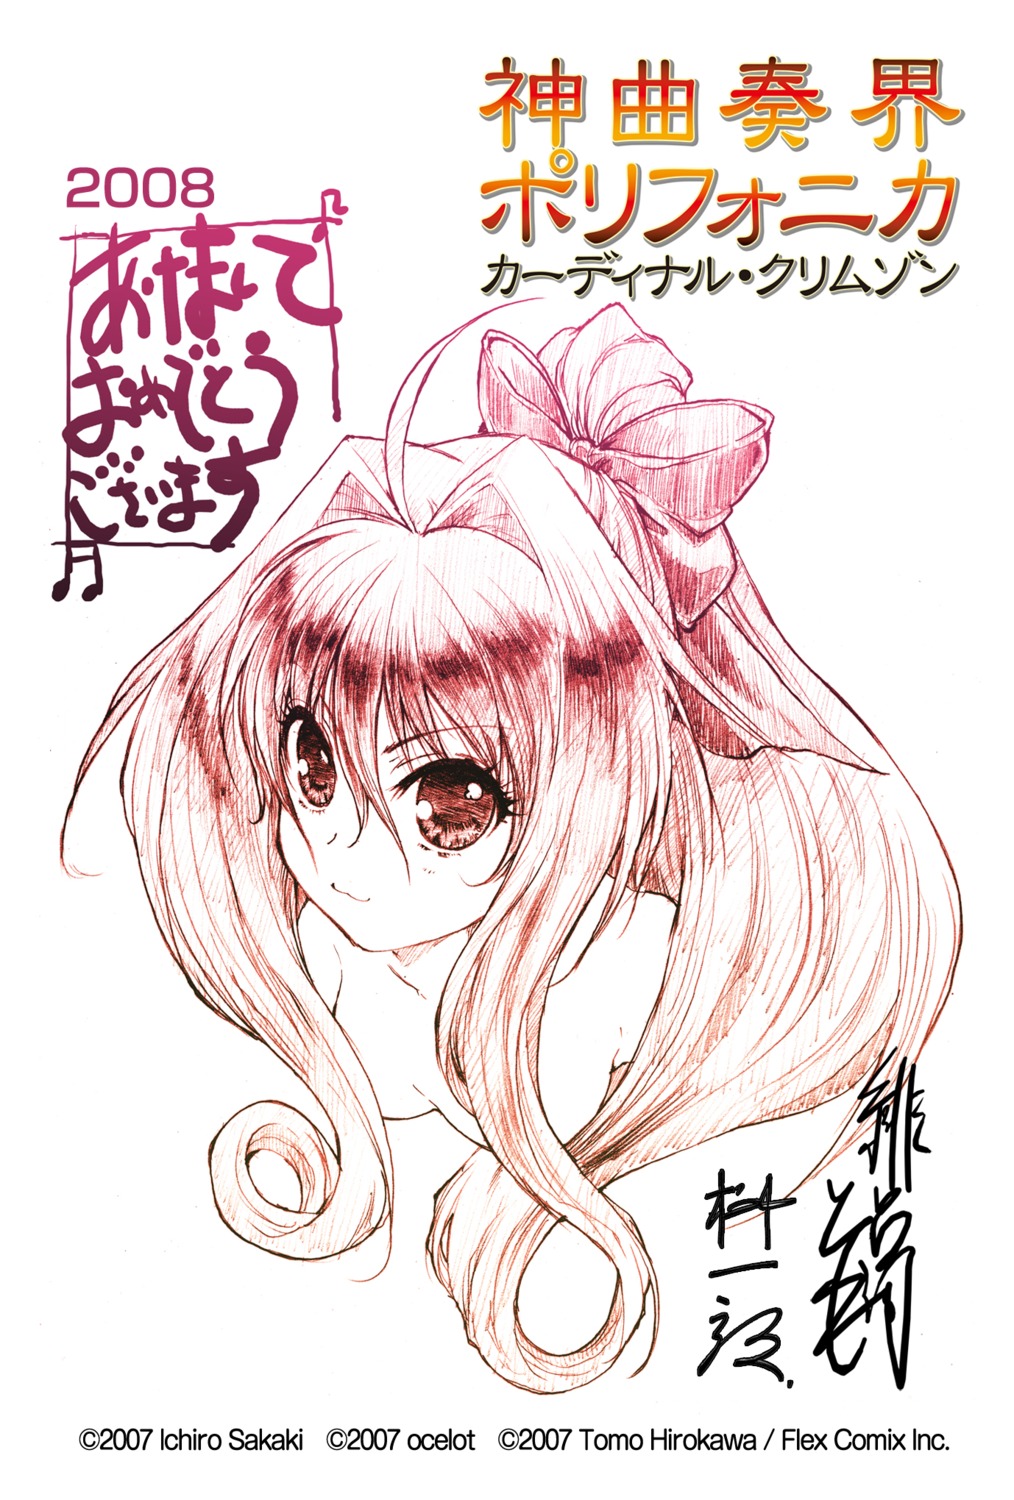 corticarte_apa_lagranges hirokawa_tomo shinkyoku_soukai_polyphonica sketch